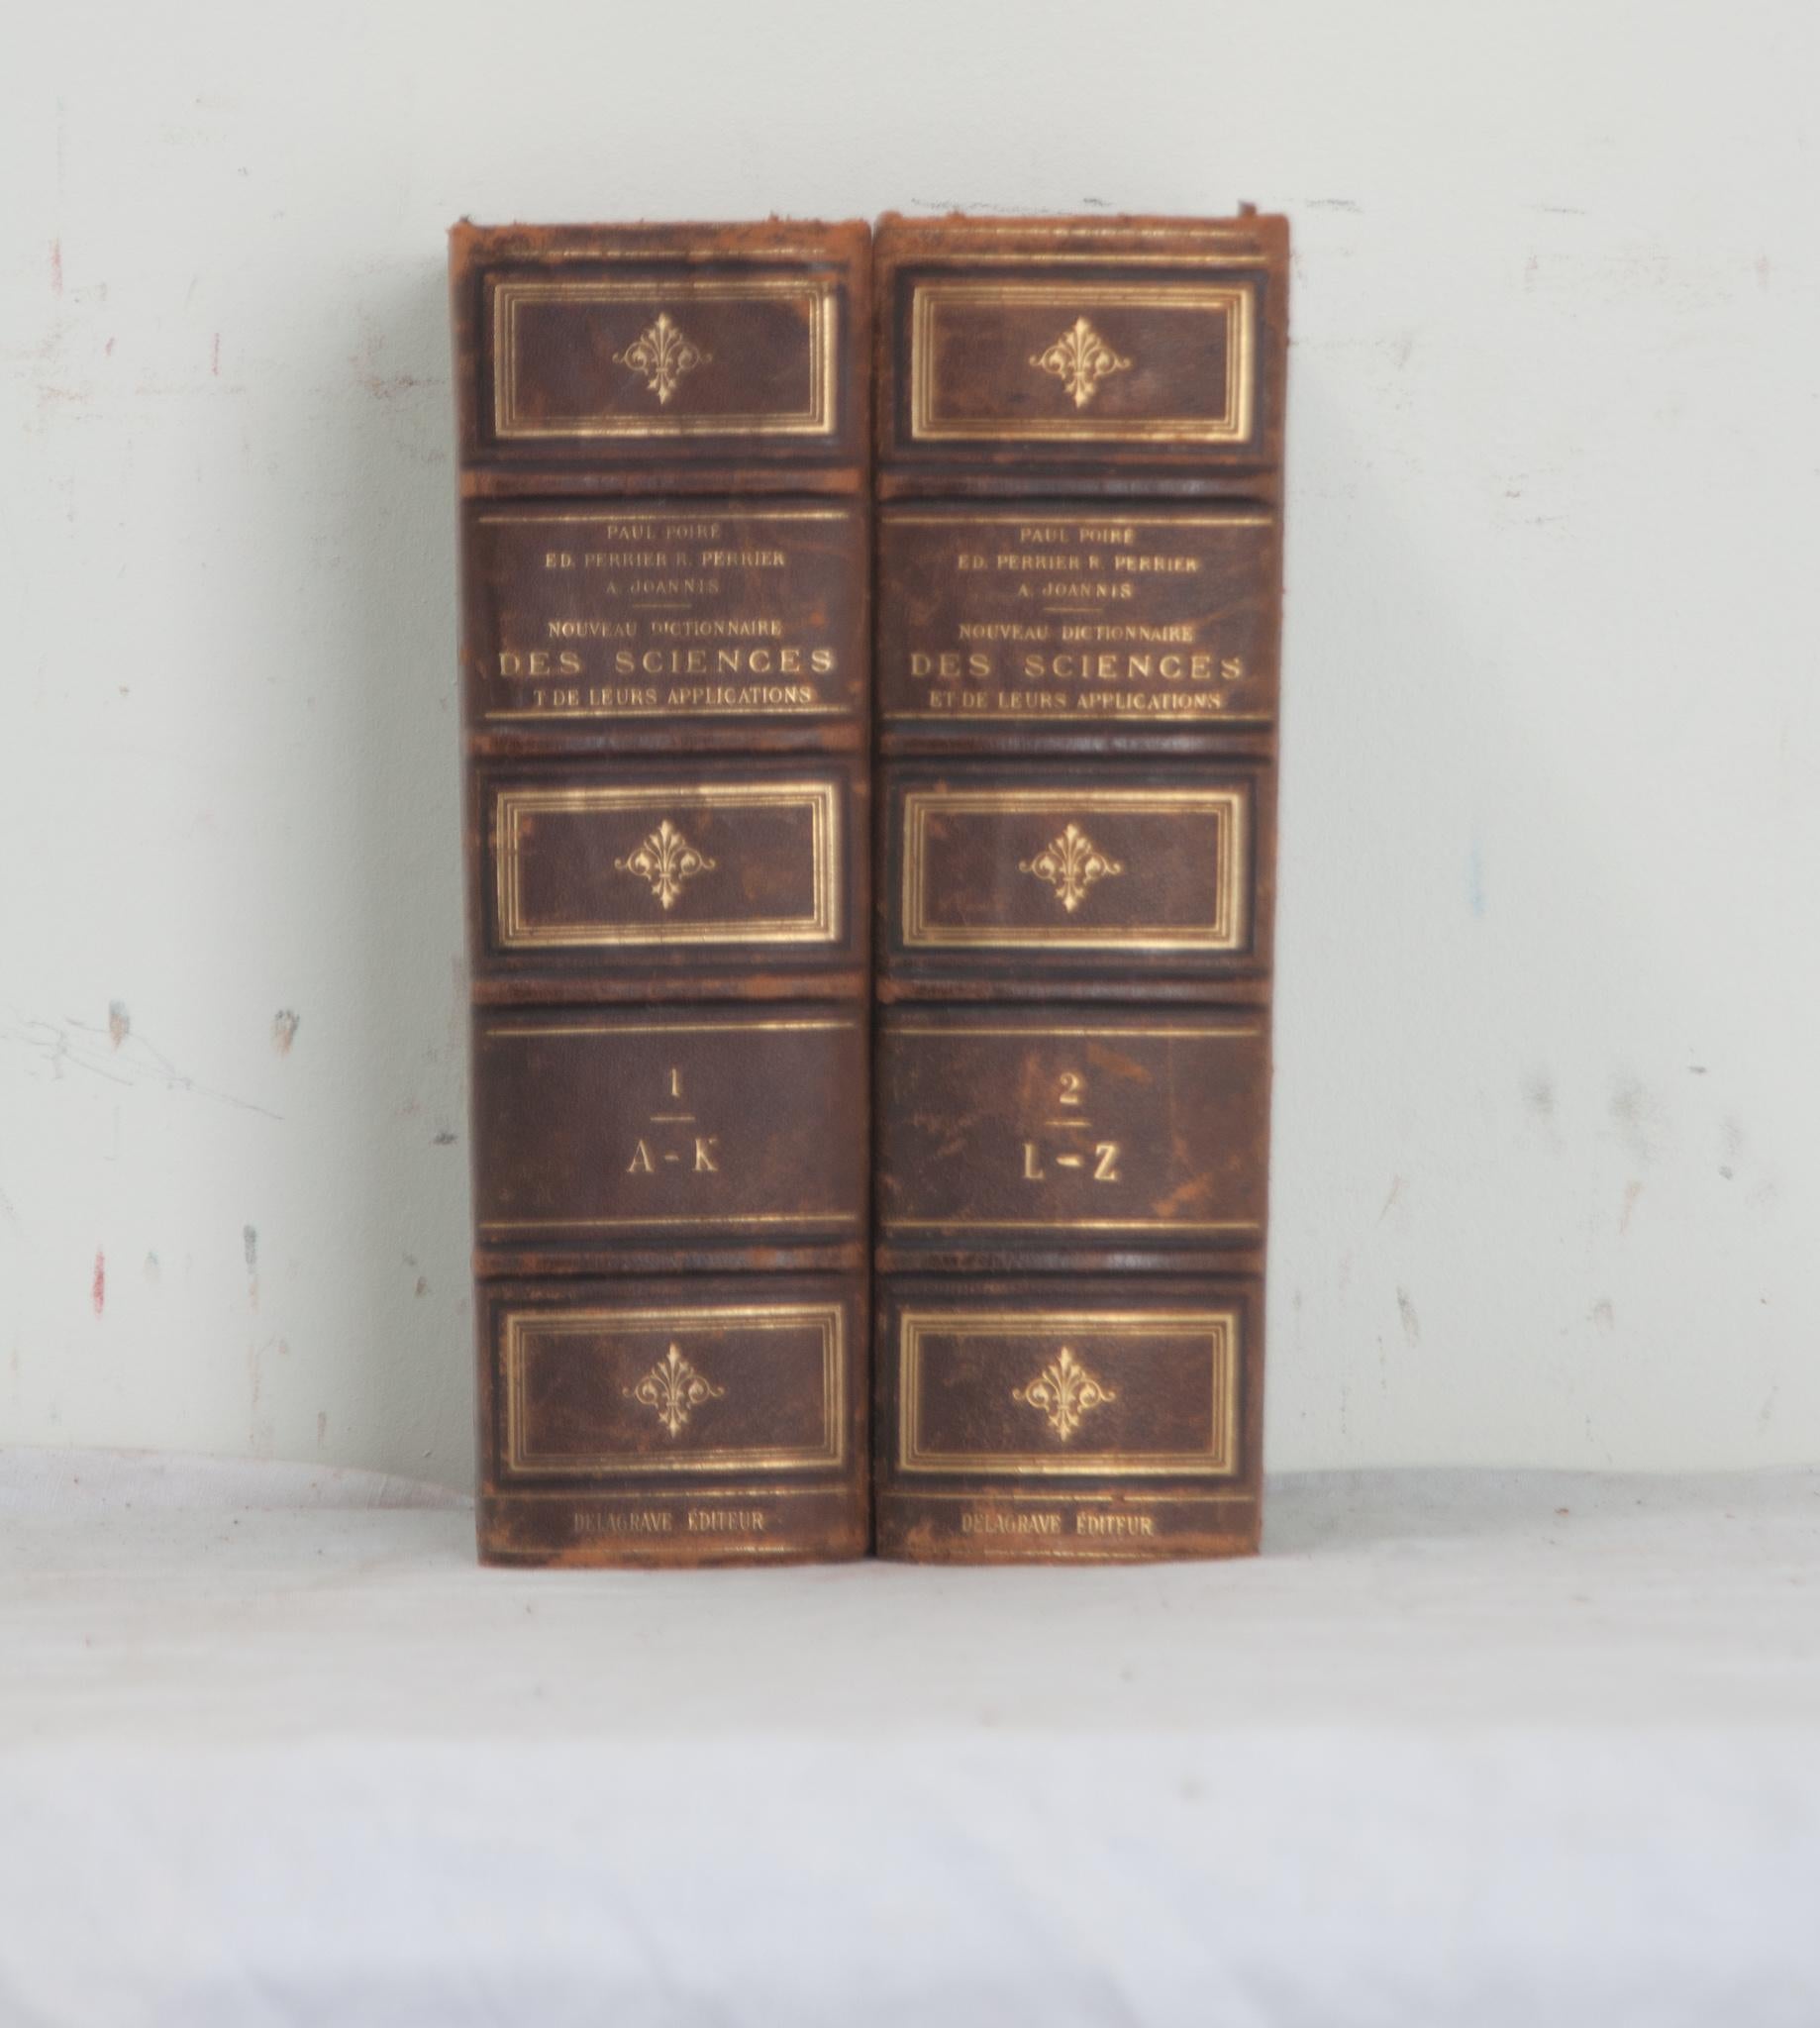 Ein französisches Paar von Nouveau Dictionnaire Des Sciences Büchern von Paul Poiré. Die Bücher der Collection'S sind in Leder gebunden und mit Goldschrift versehen, die den Autor, den Titel und den jeweiligen Band angibt. Das Set wurde 1888